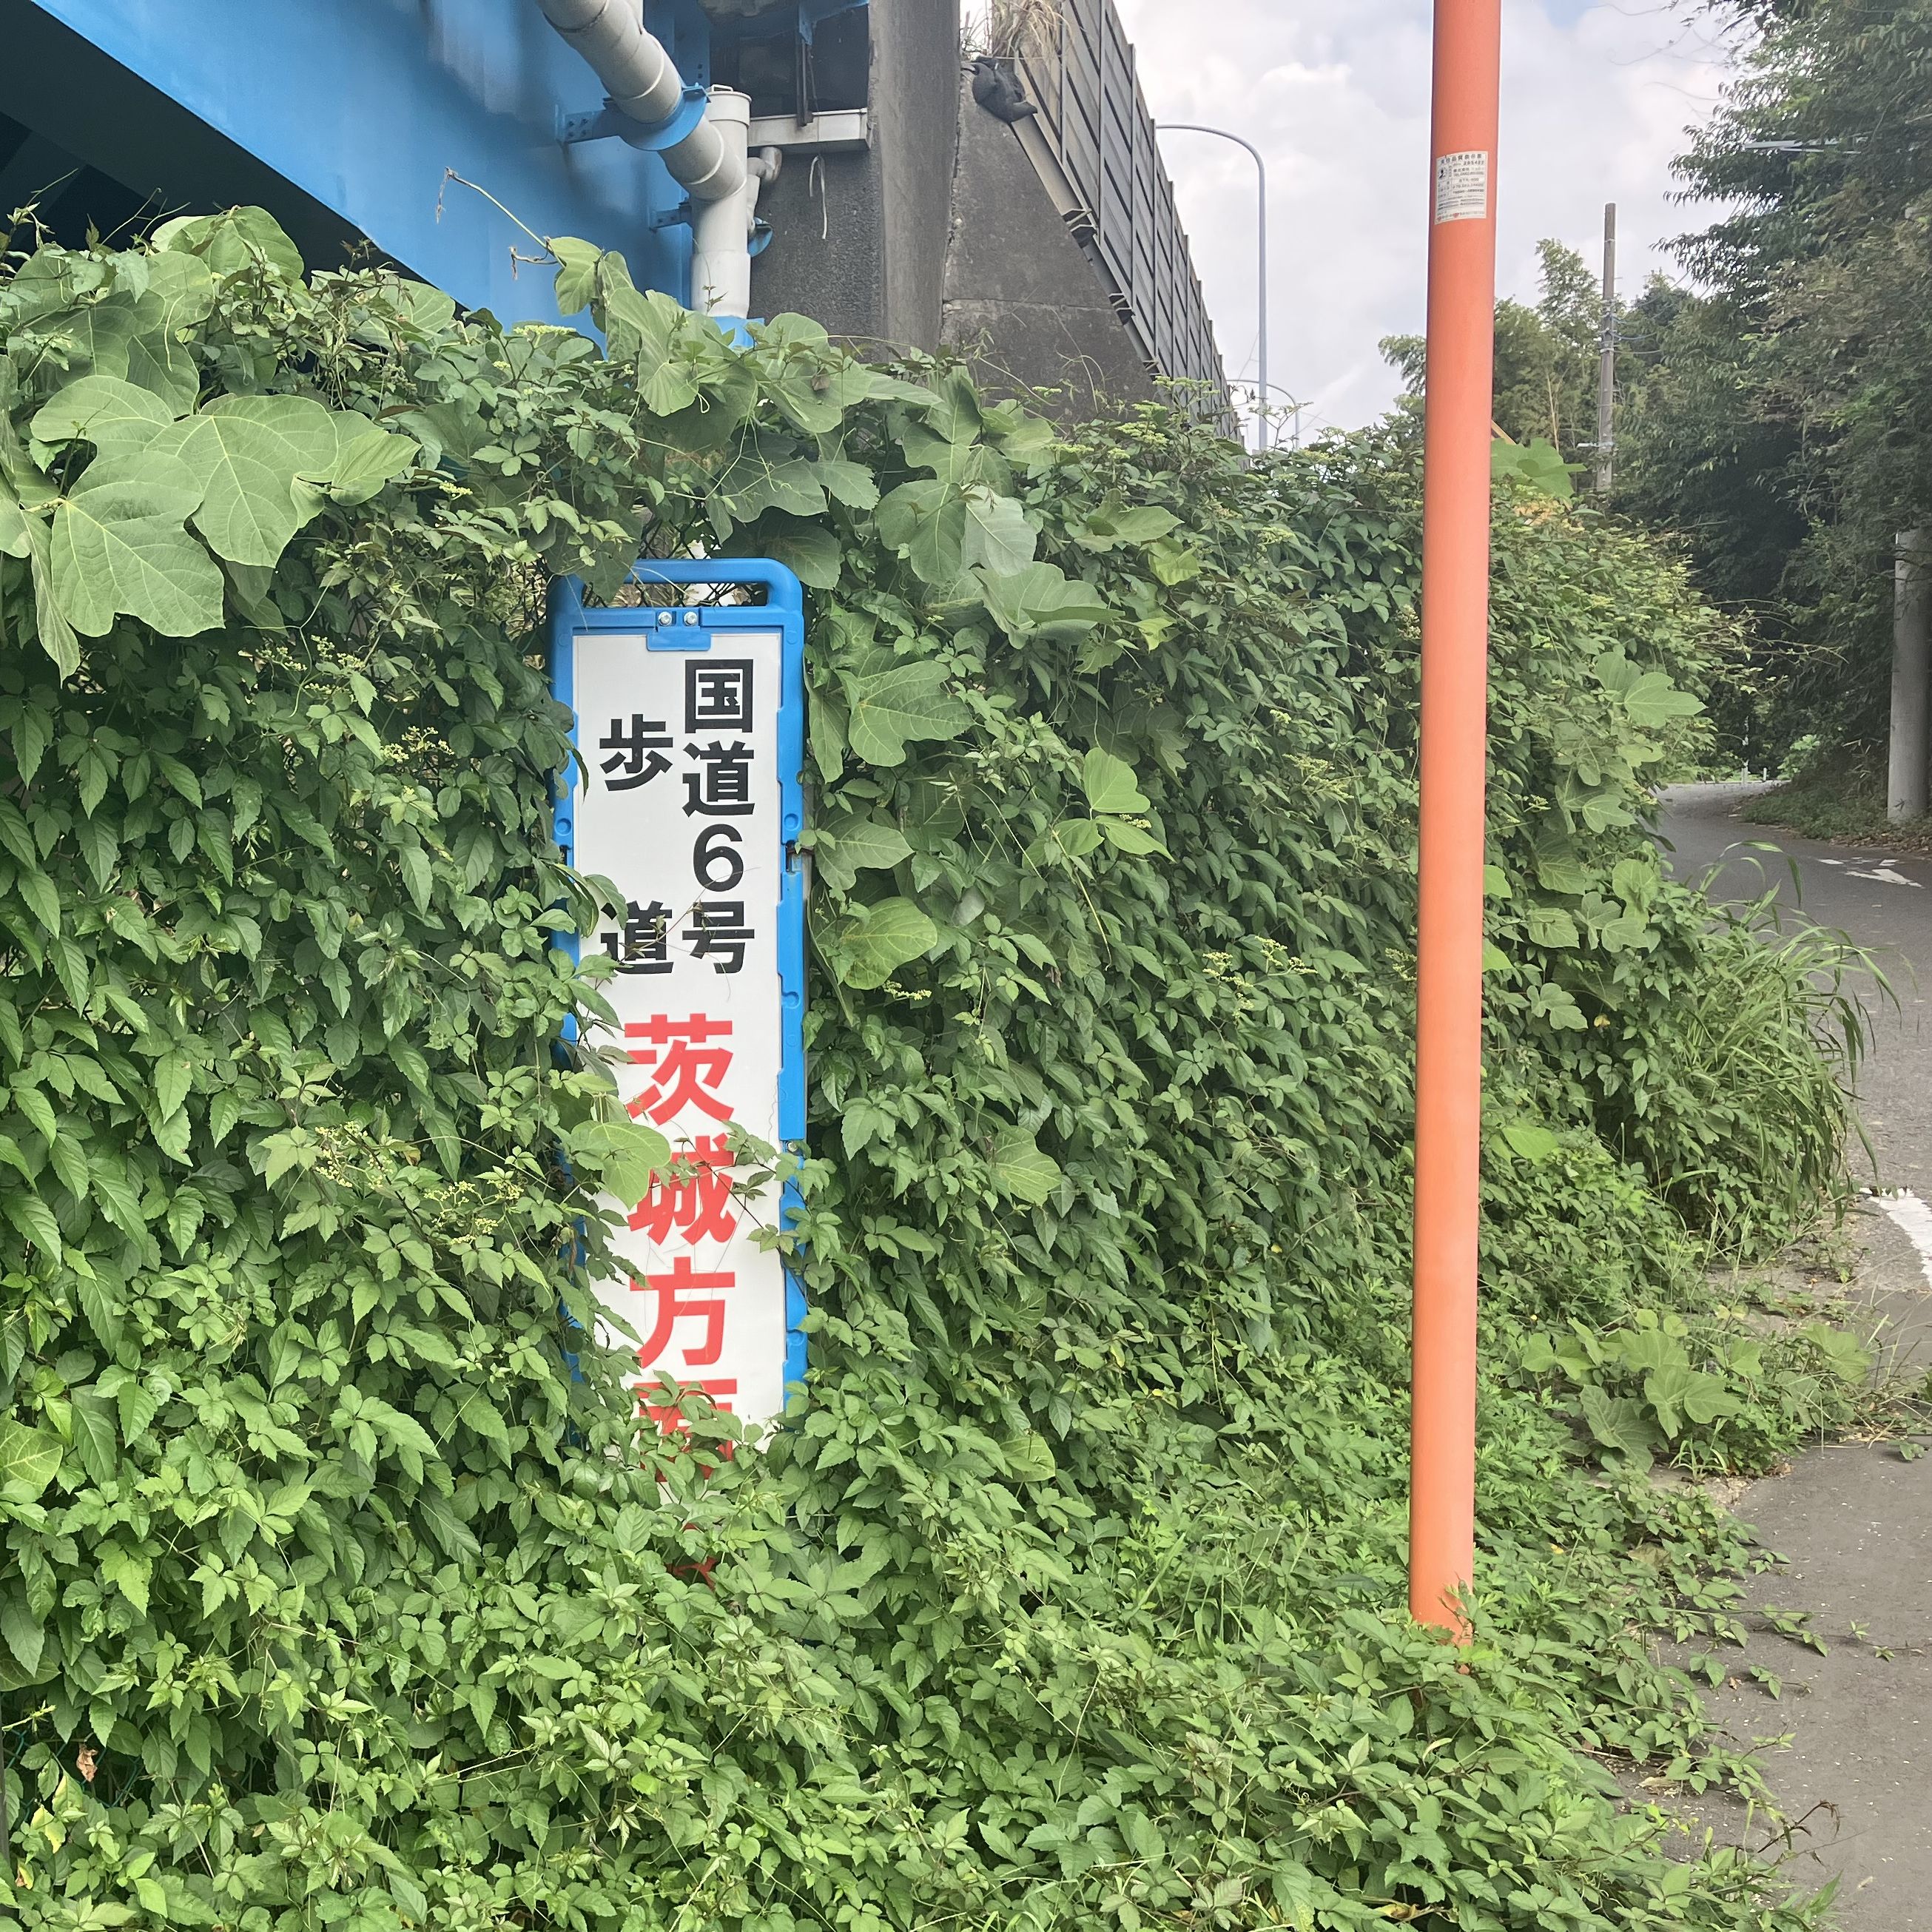 牛久にある日本一のラーメンショップまで東京から徒歩で向かうのアイキャッチ画像